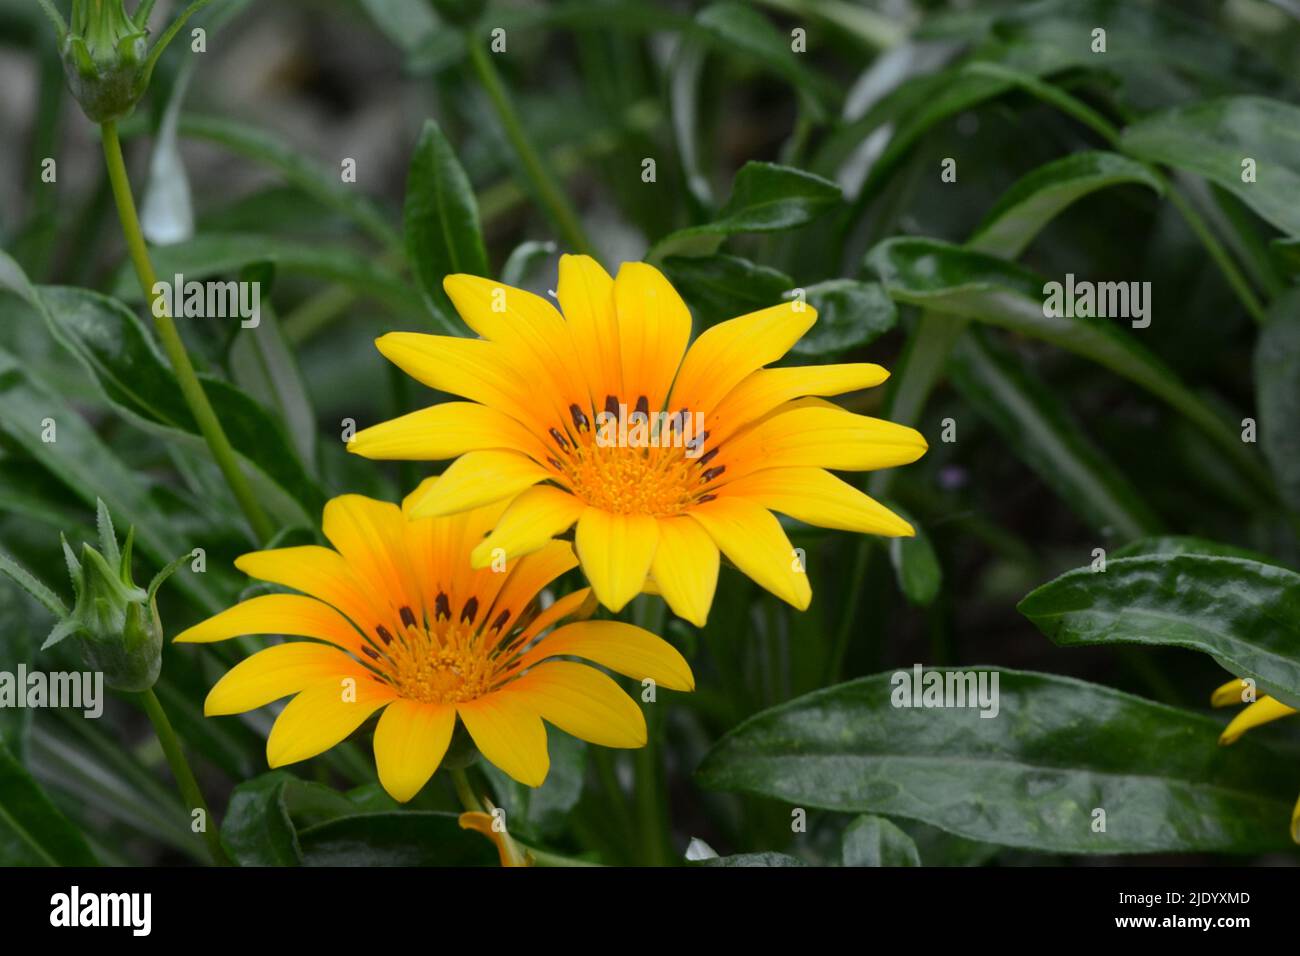 Gazania Daybreak Bright Orange Treasure flower orange-yellow daisy like flower Stock Photo